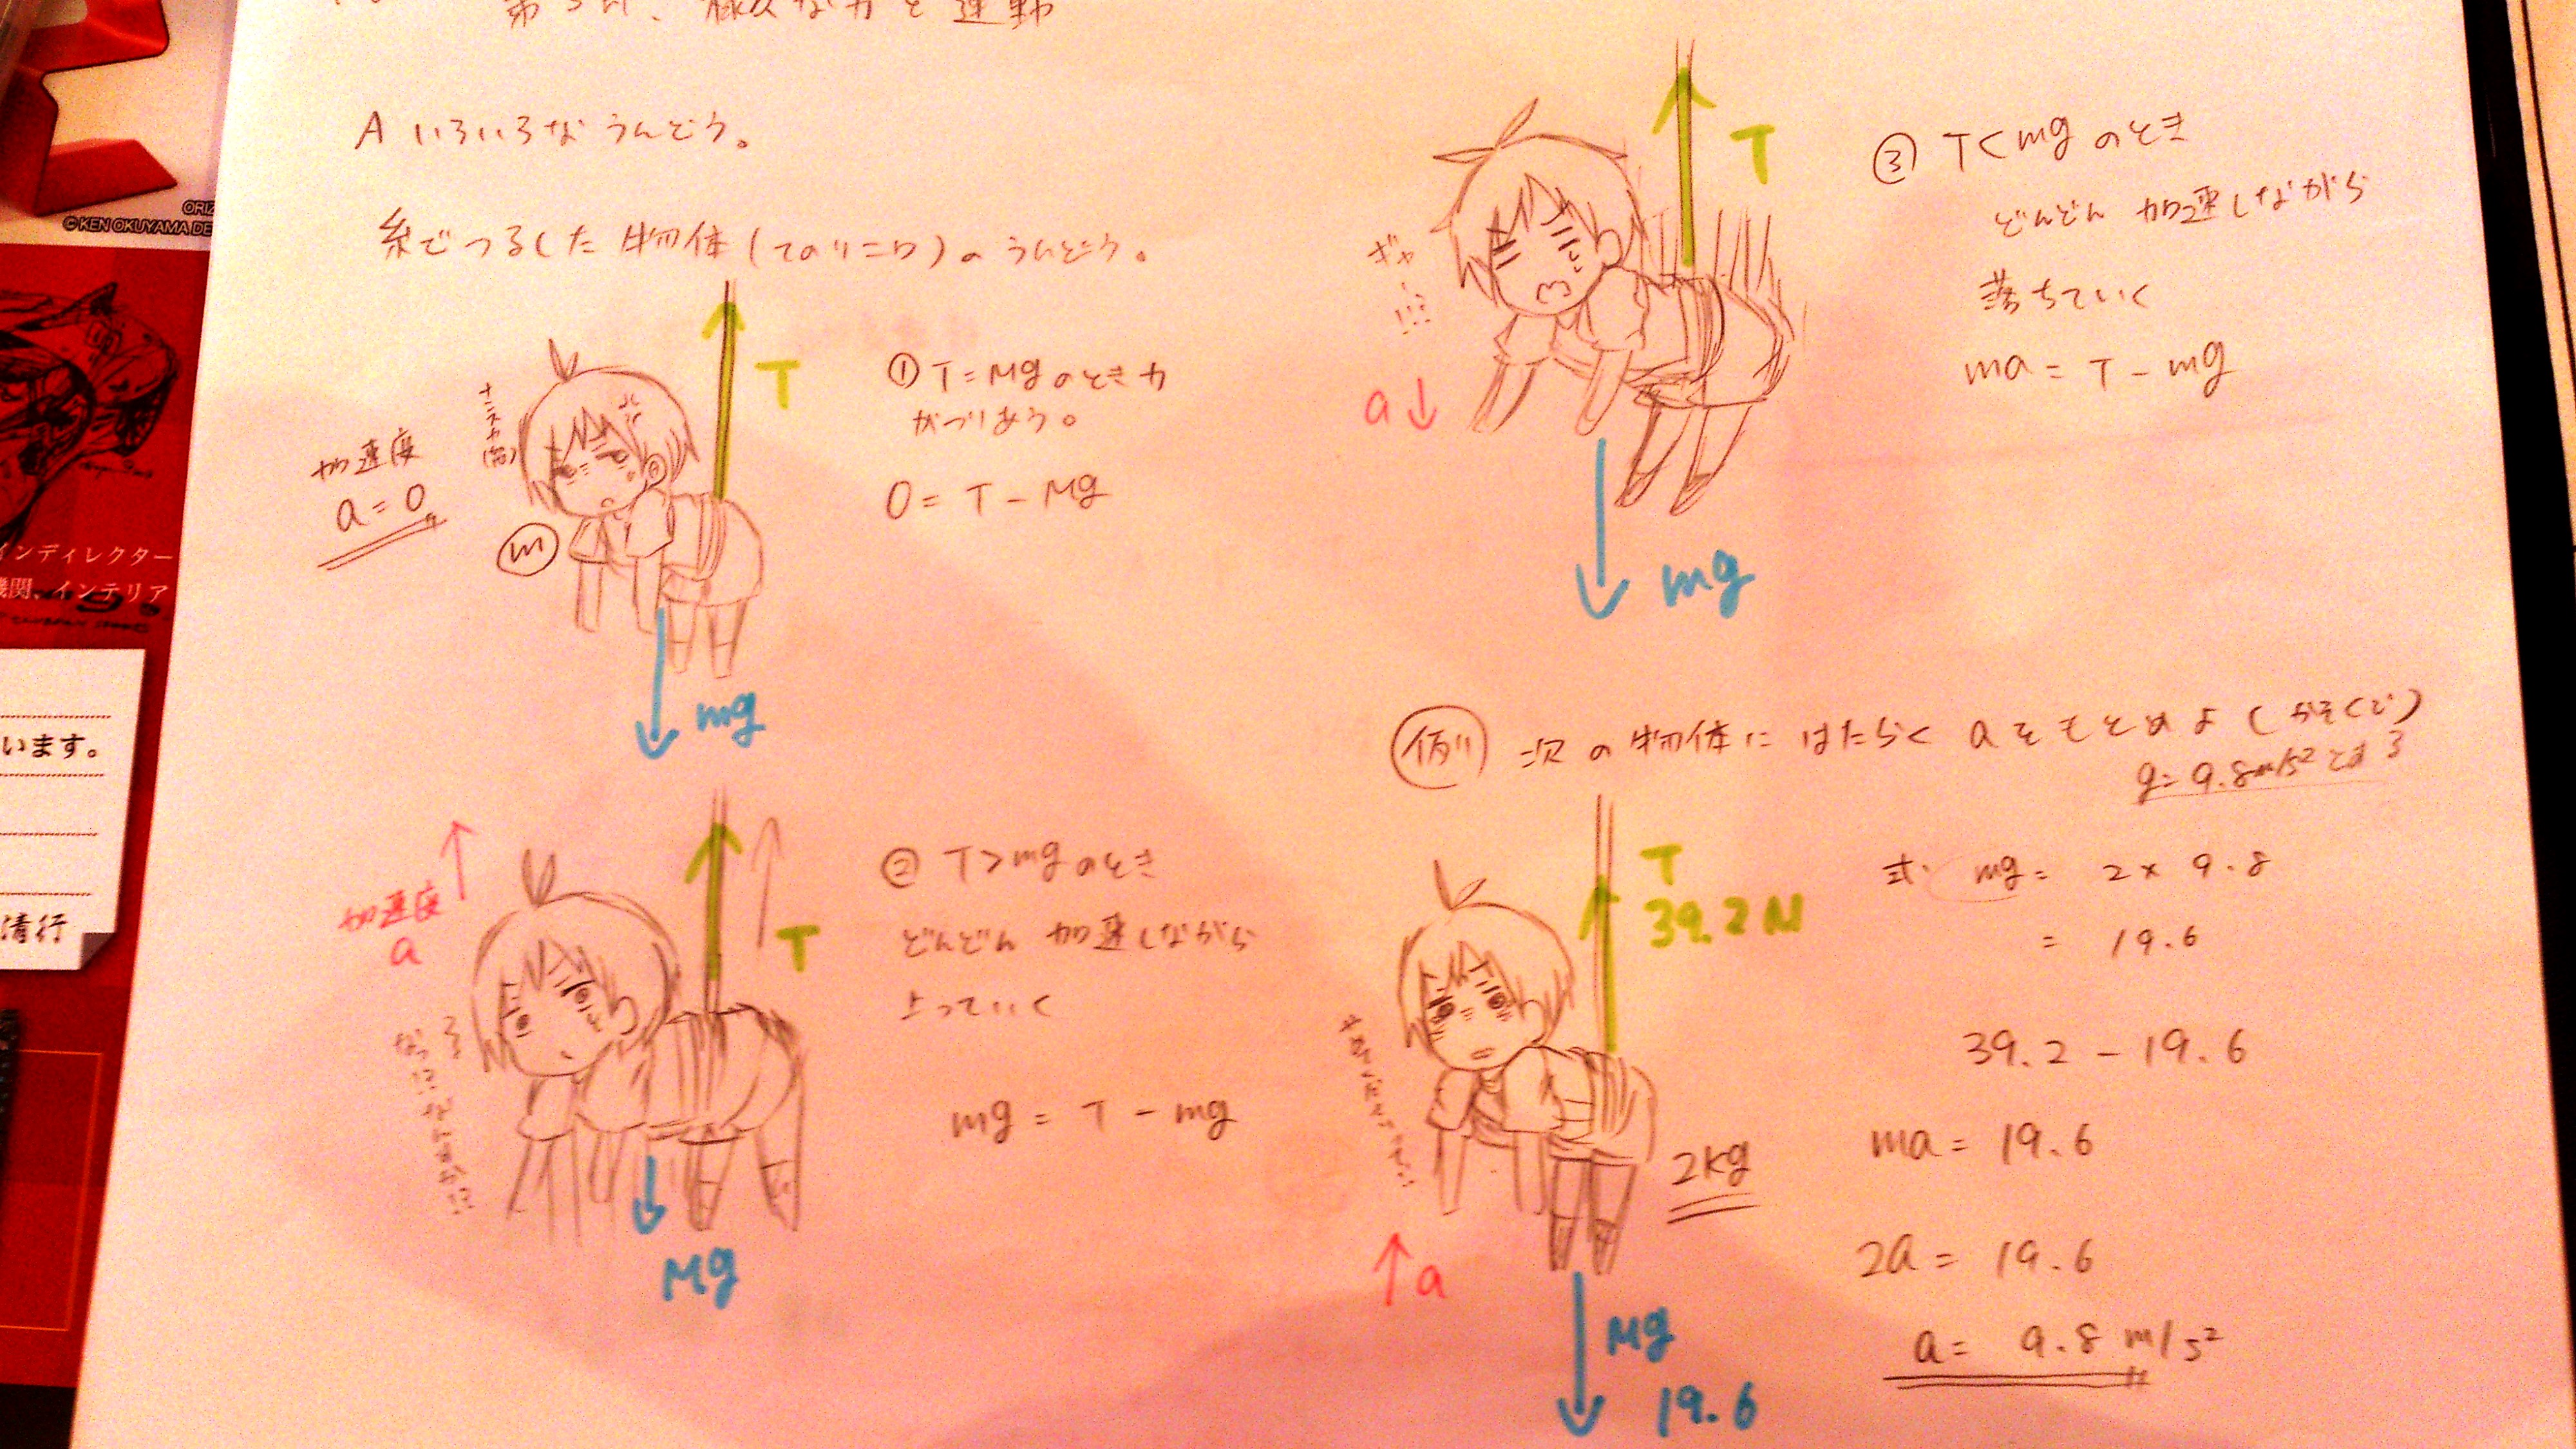 高校生の可愛い落書きを見つけました Tca Blog Tca 東京コミュニケーションアート